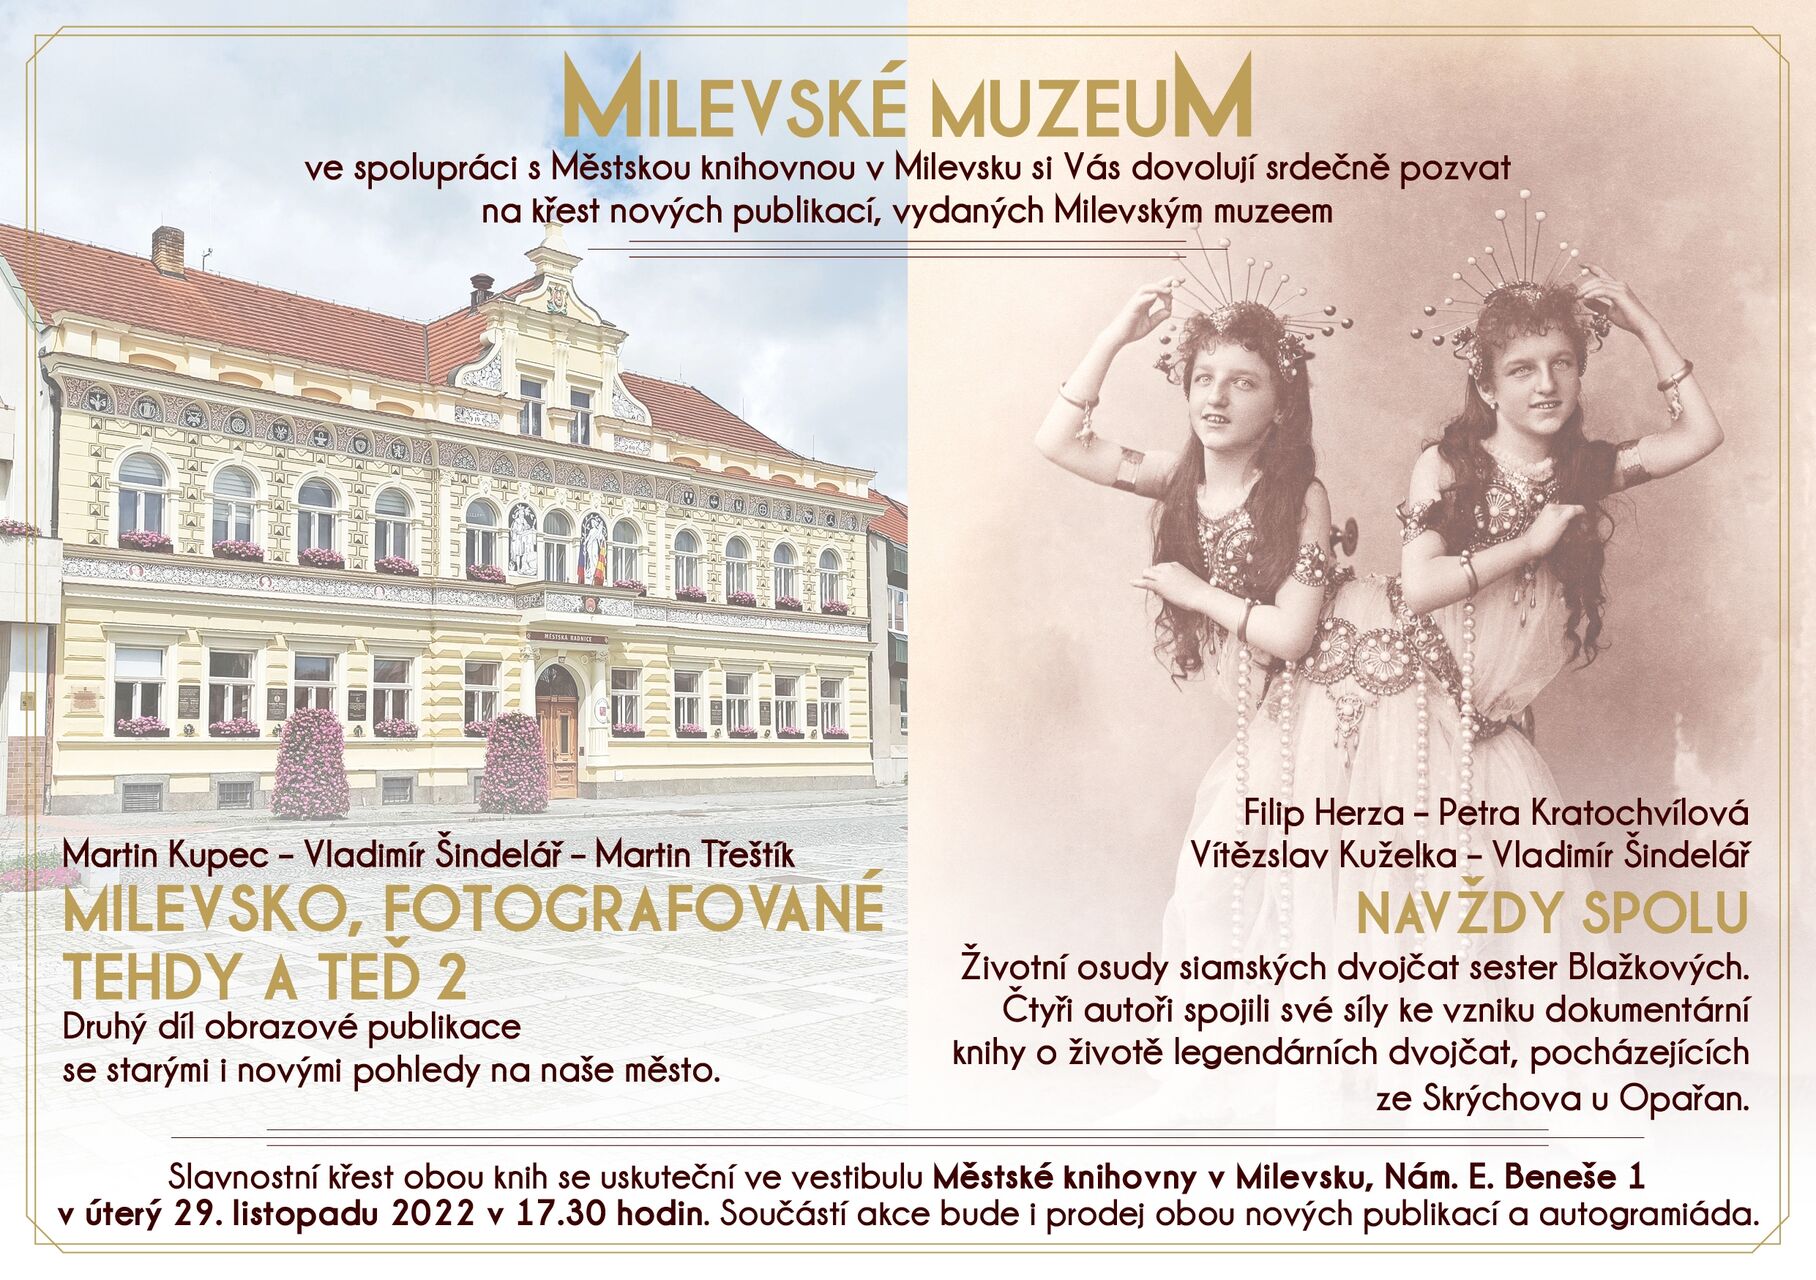 Plakát Křest nových publikací Milevsko fotografované tehdy a teď 2 a Navždy spolu